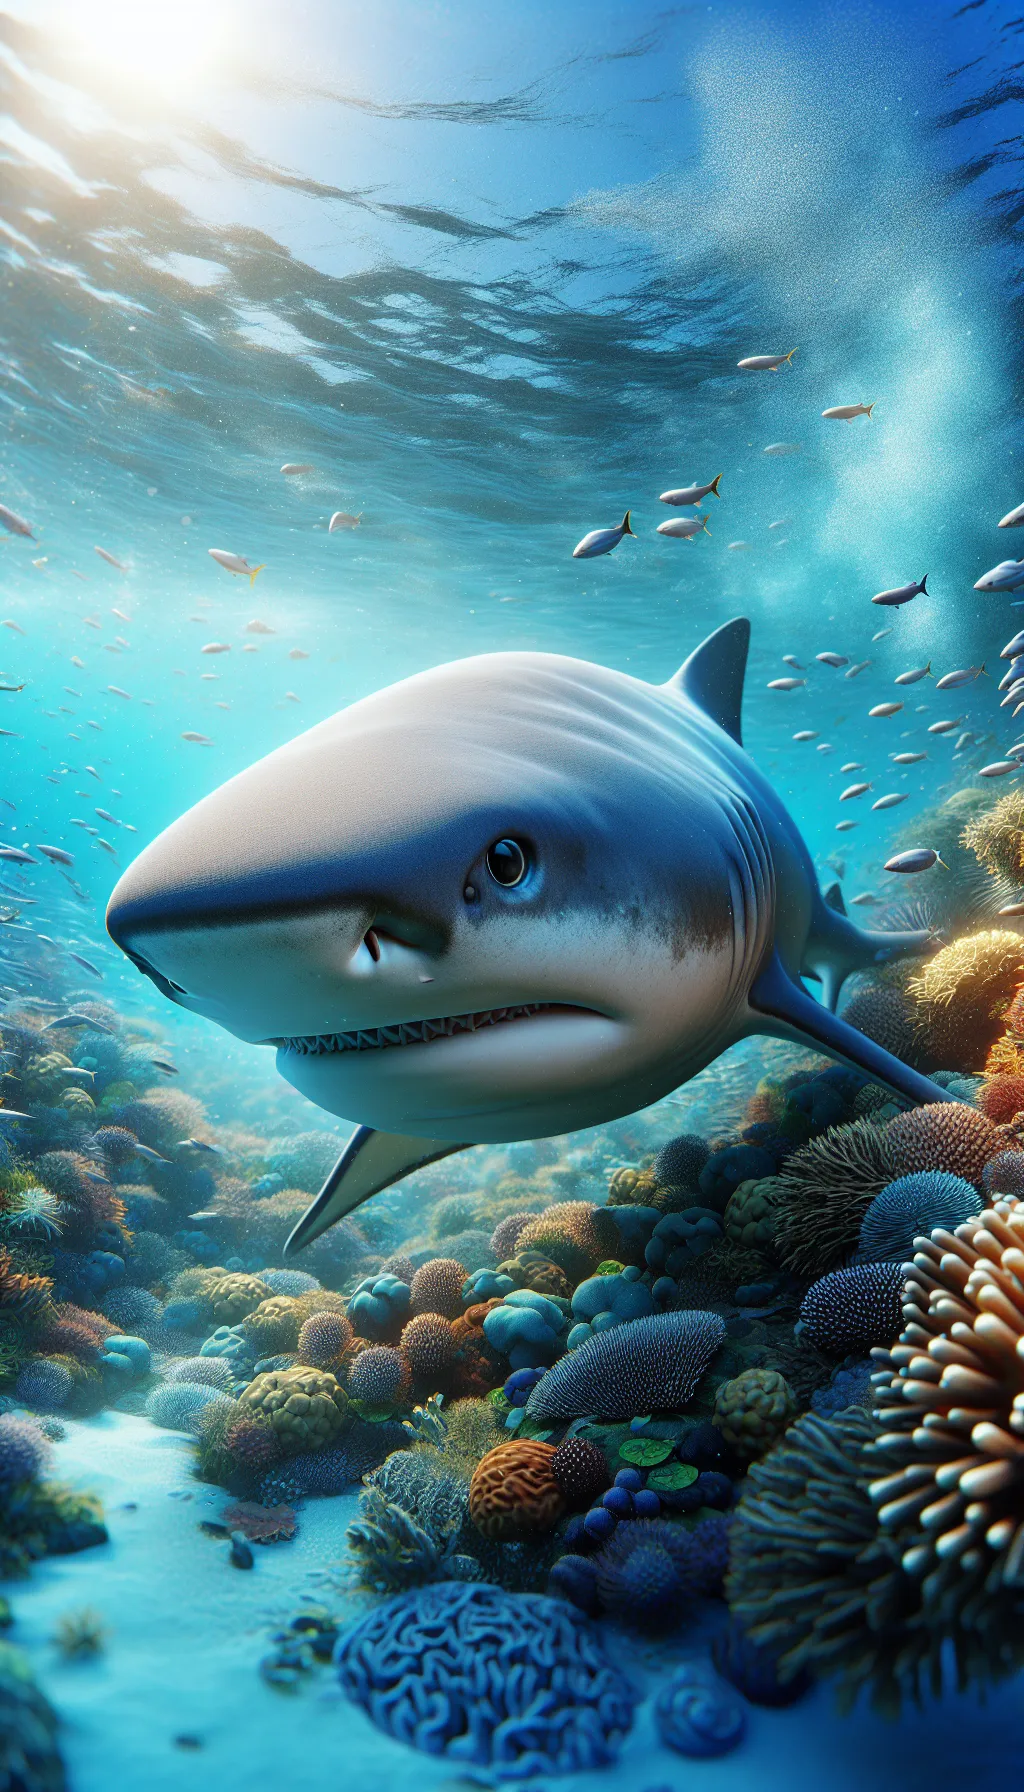 Salmon Shark - Animal Matchup